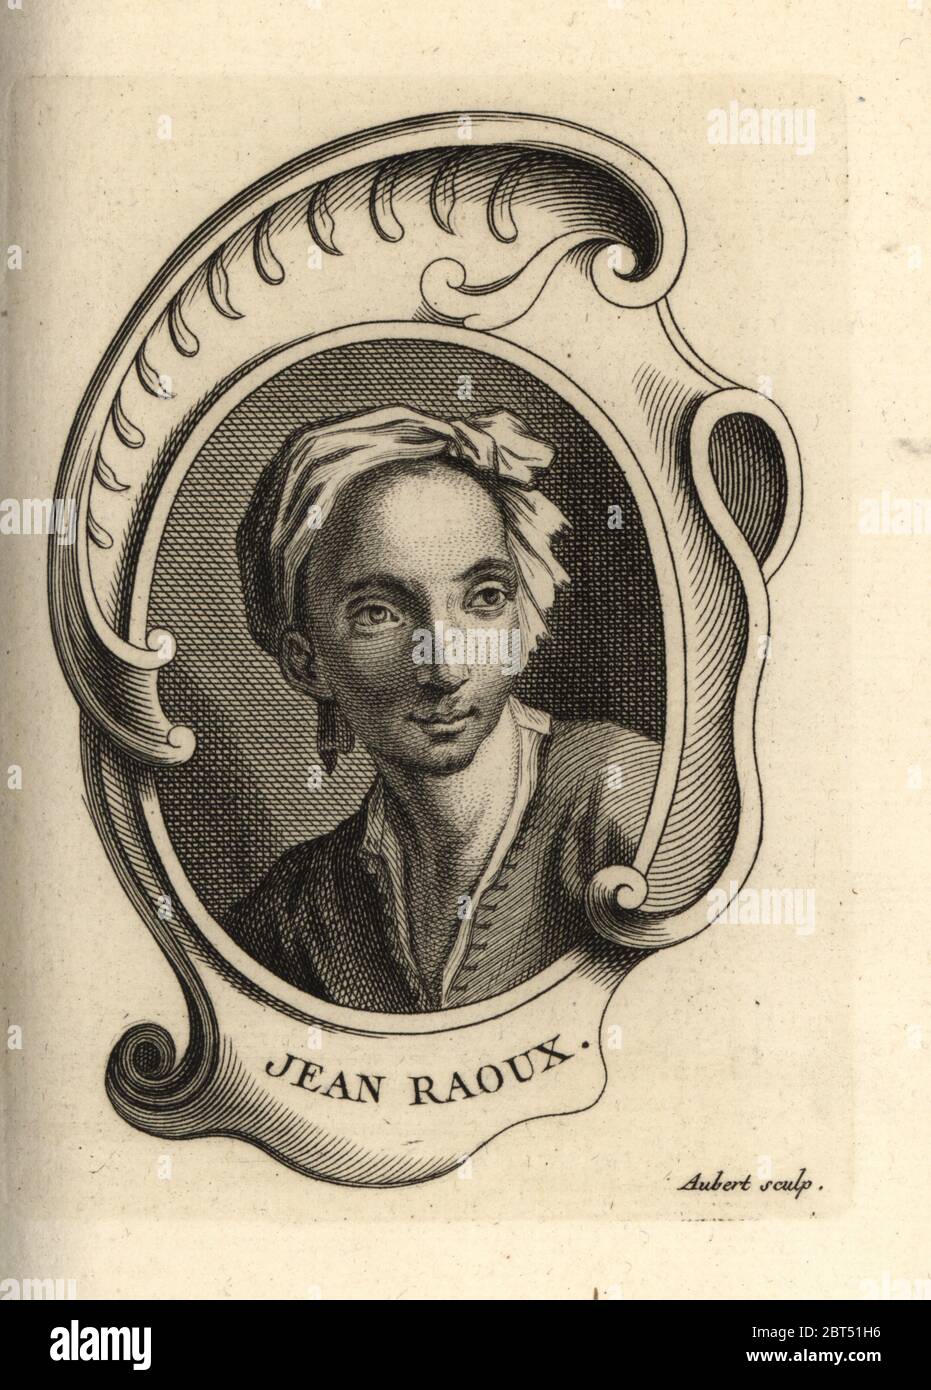 Ritratto di Jean Raoux, pittore francese 1677-1734. Incisione su copperplate di M. Aubert da Antoine-Joseph Dezallier dArgenvilles Abrege de la vie des Plus fameux peintres, vite dei più famosi artisti, de Bure Laine, Parigi, 1762. Foto Stock